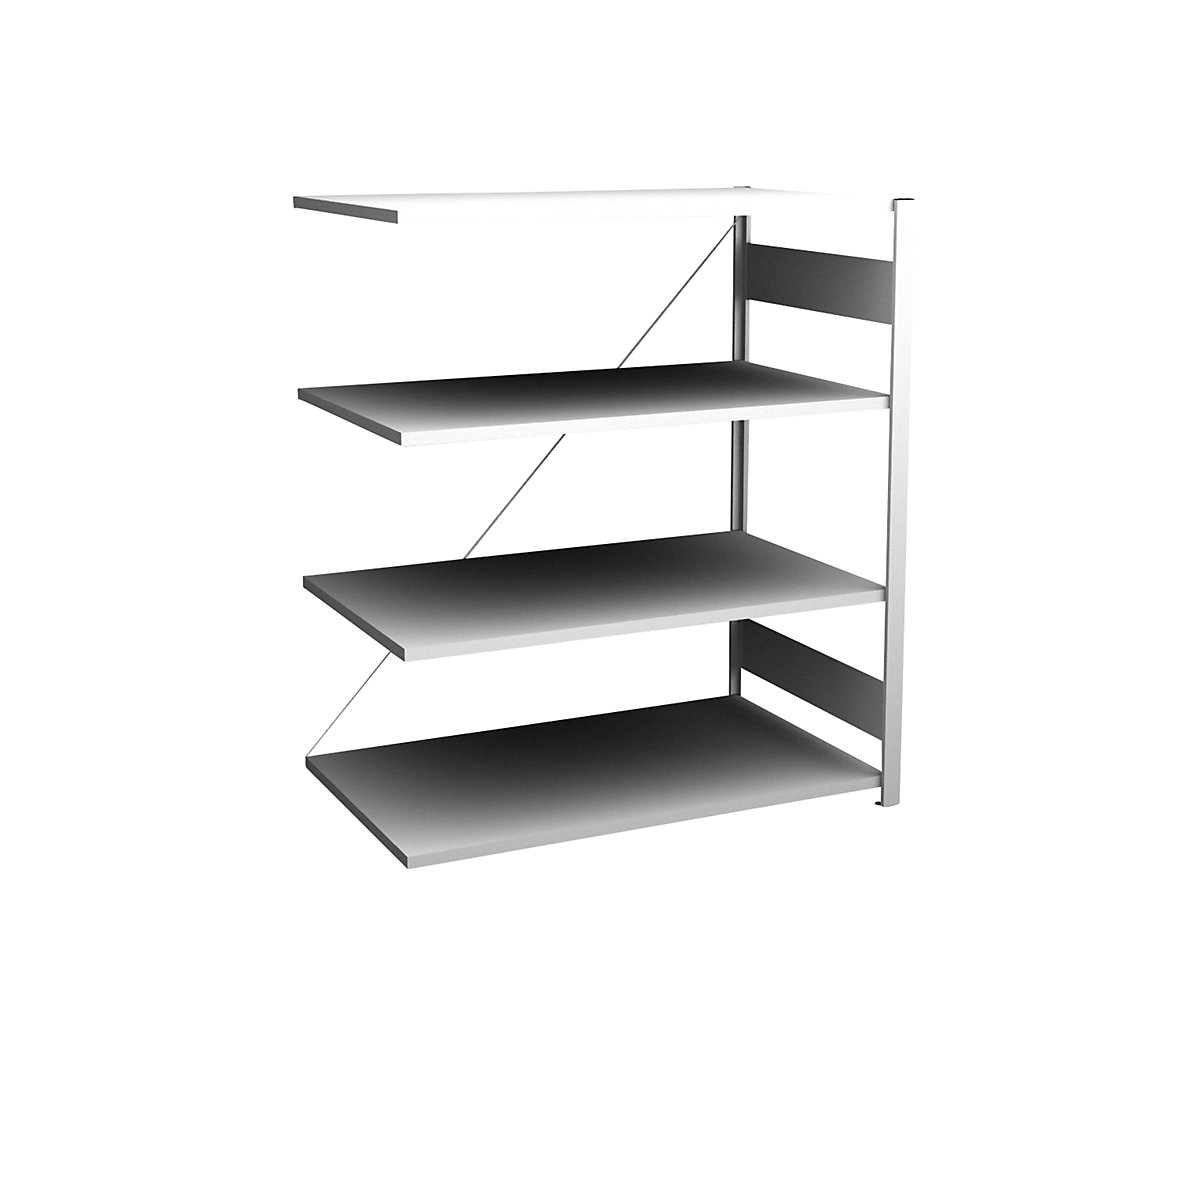 Sideboard shelving unit, light grey – hofe, height 1200 mm, 4 shelves, extension shelf unit, shelf depth 800 mm, max. shelf load 130 kg-10